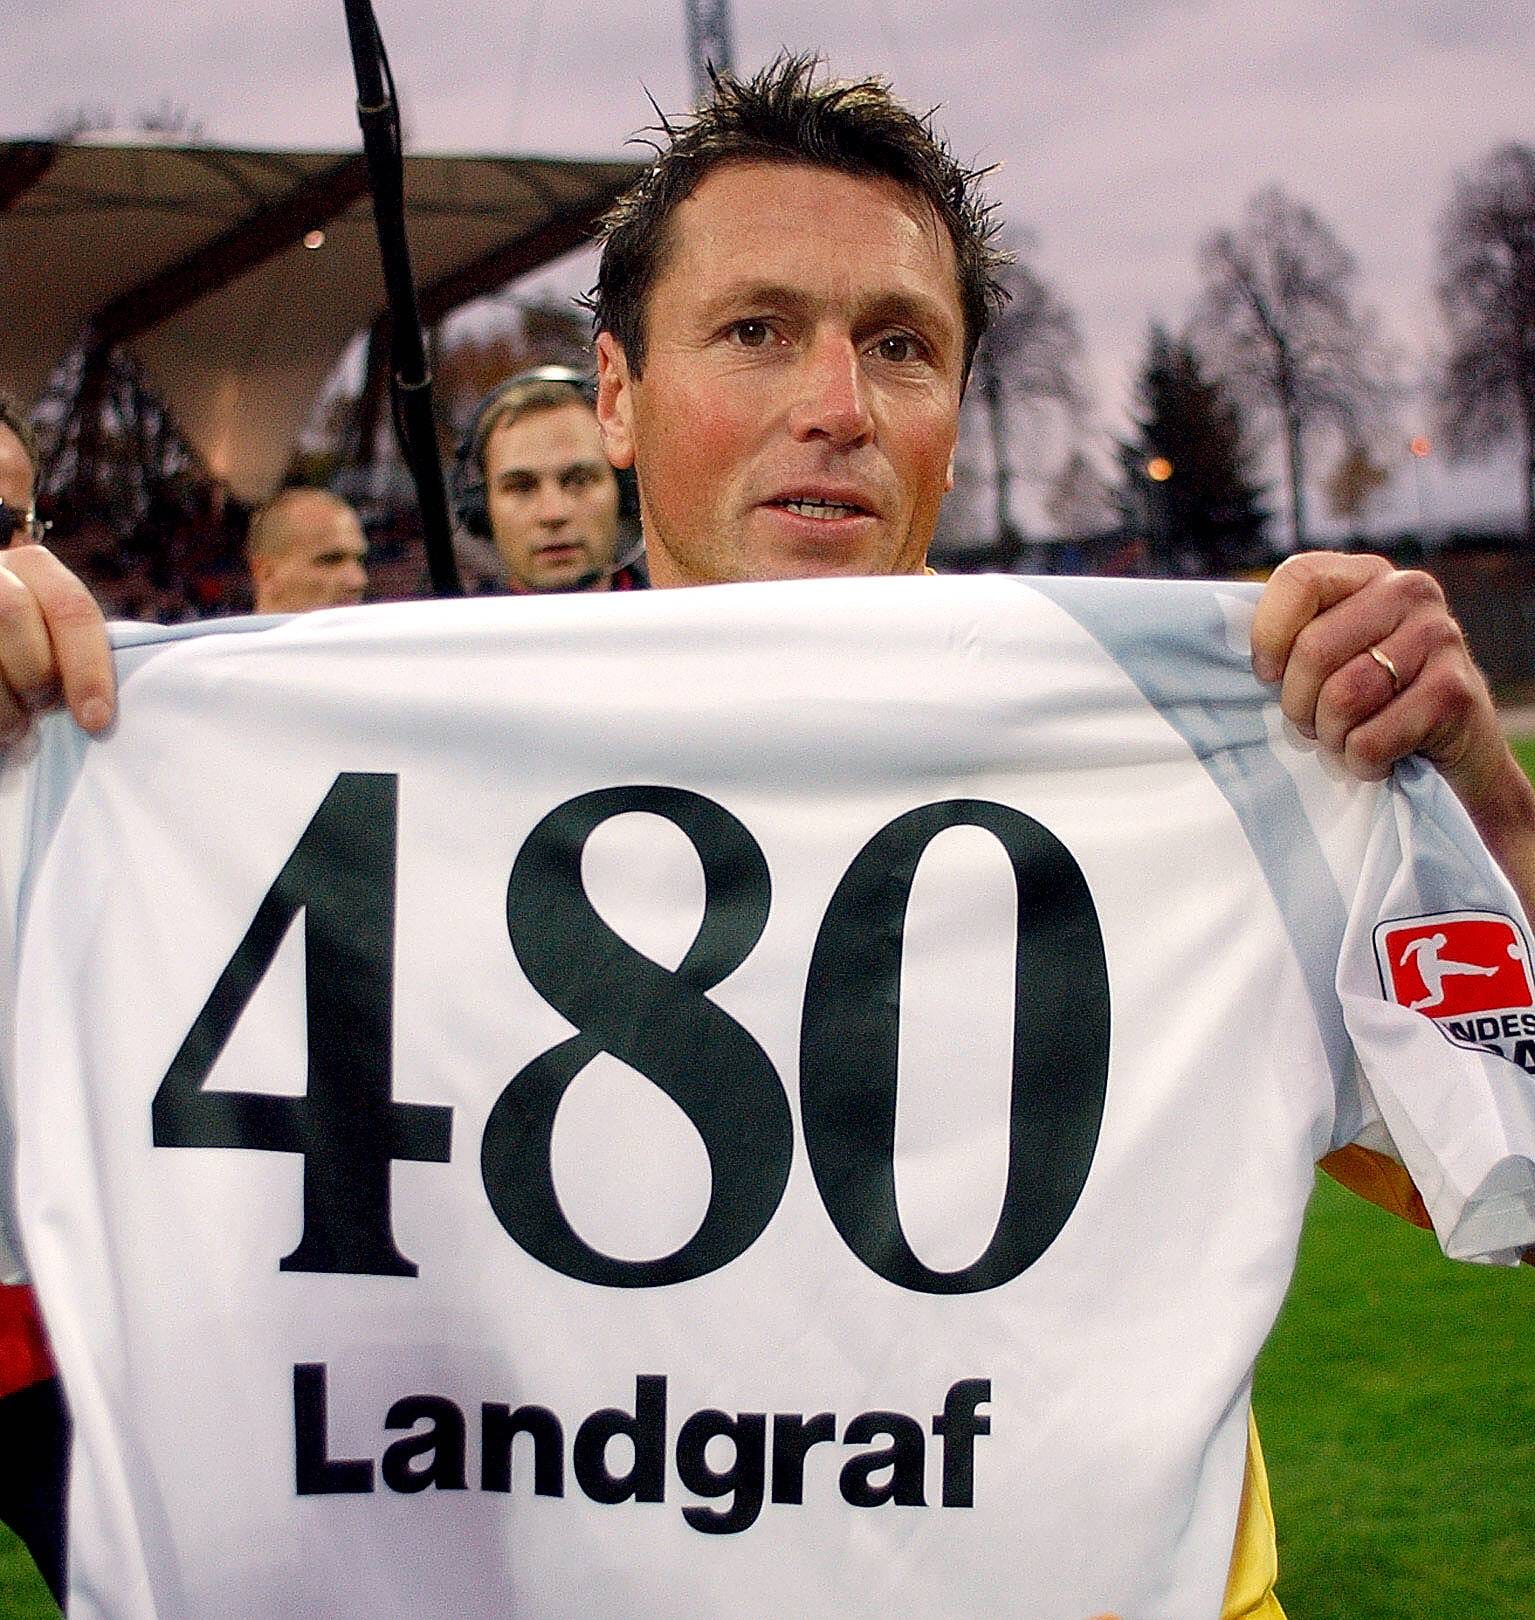 Willi Landgraf ist der Rekordspieler der 2. Bundesliga. Doch bei 480 Partien war für ihn noch lange nicht Schluss. Auch andere Fußball-Legenden haben beeindruckende Spielstatistiken. Klicken Sie sich durch die unsere Fotoshow.